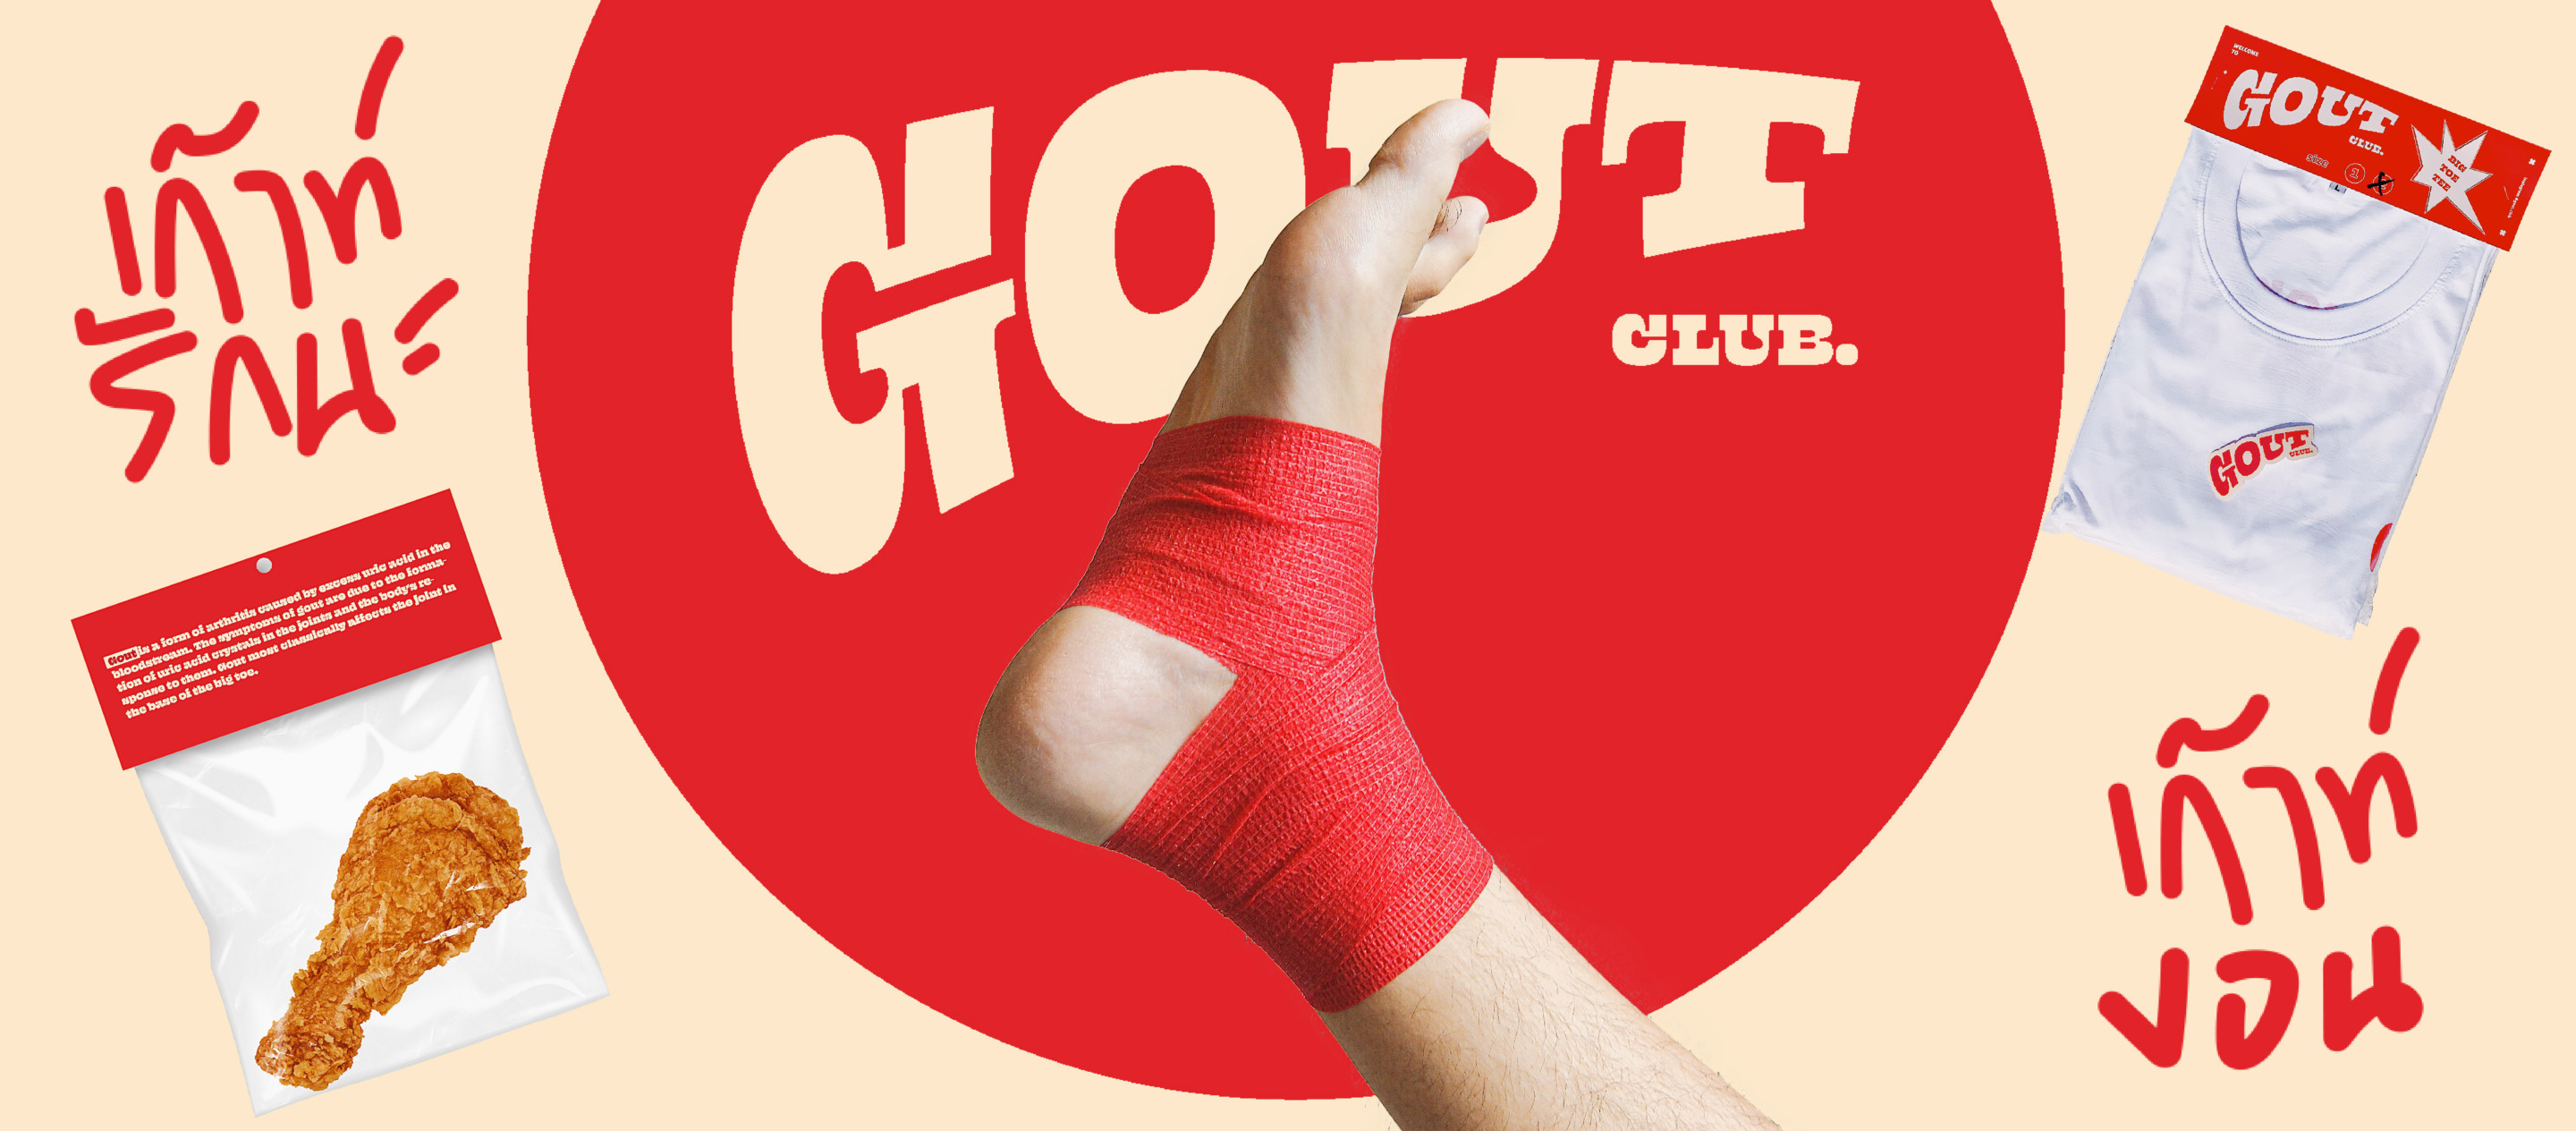 gout.club แบรนด์ของคนเป็นเกาต์ที่อยากบอกว่าโรคเกาต์อยู่ใกล้ตัวเรากว่าที่คิด